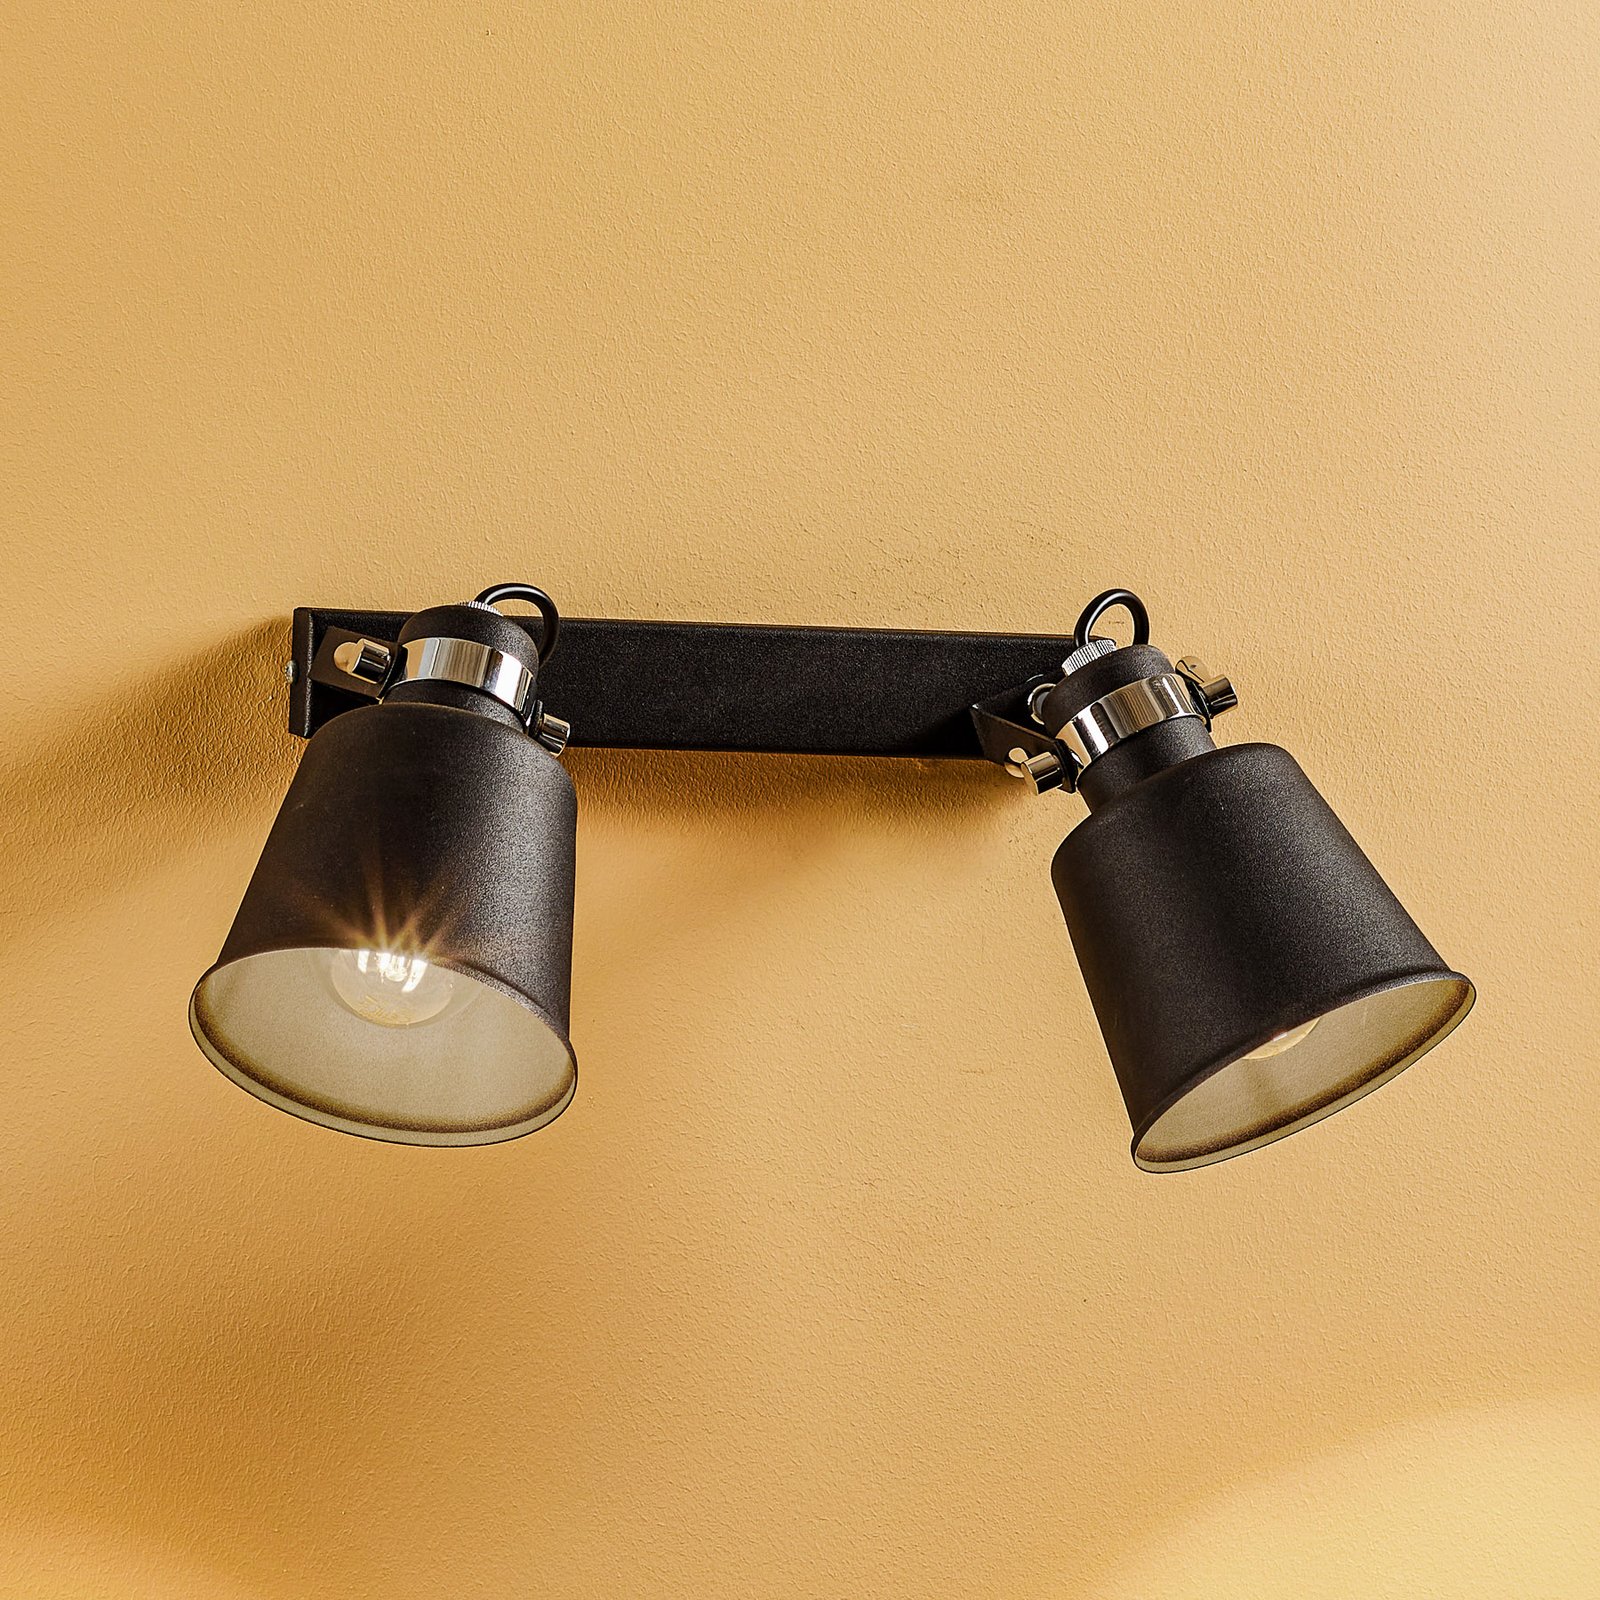 Kerava wall spotlight, two-bulb, black